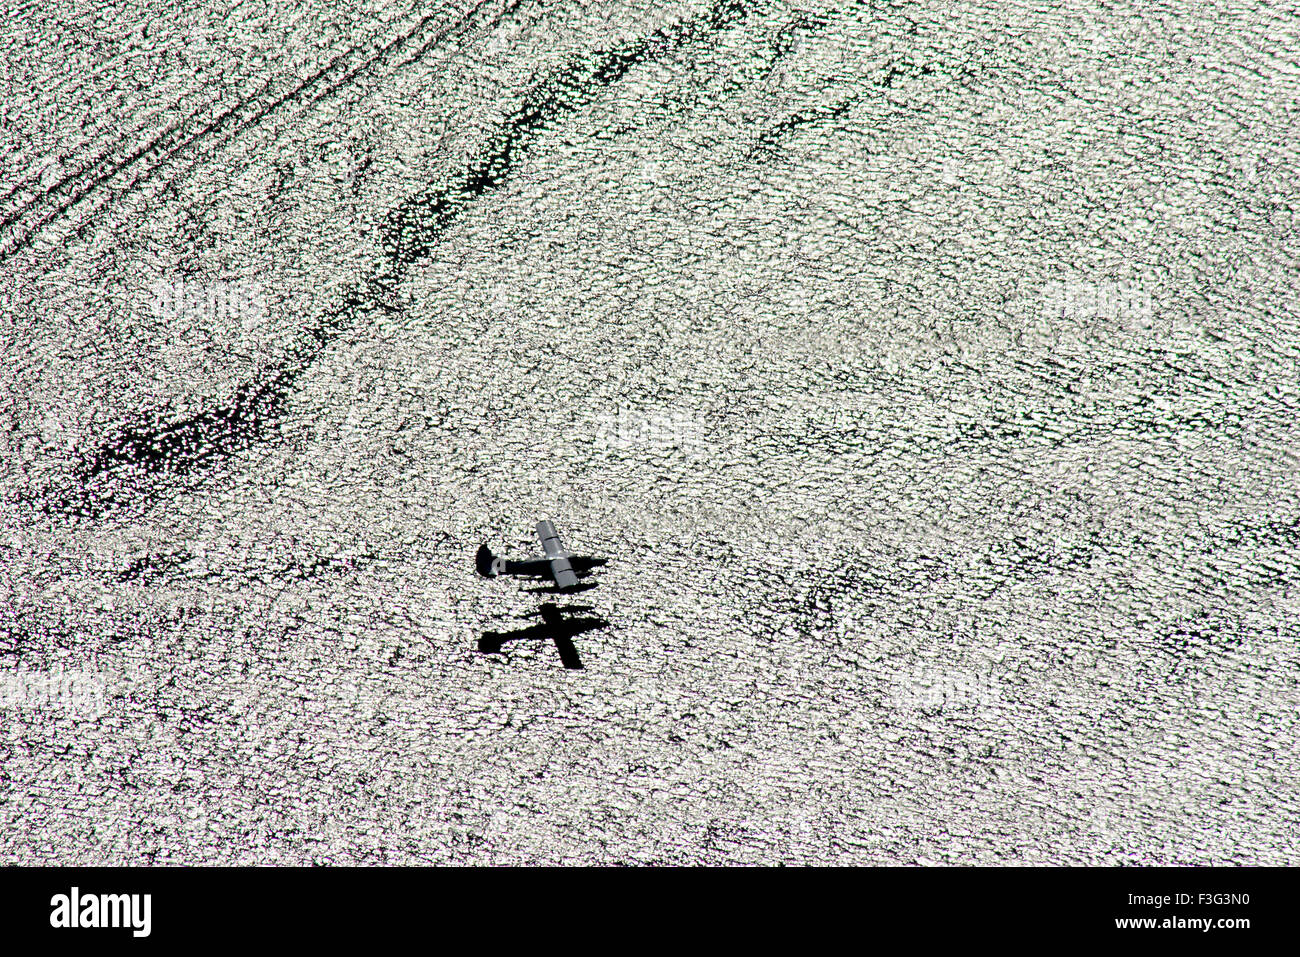 Hydravion avion aero atterrissage sur l'eau ; Juneau Alaska ; U.S.A. ; Etats-Unis d'Amérique Banque D'Images